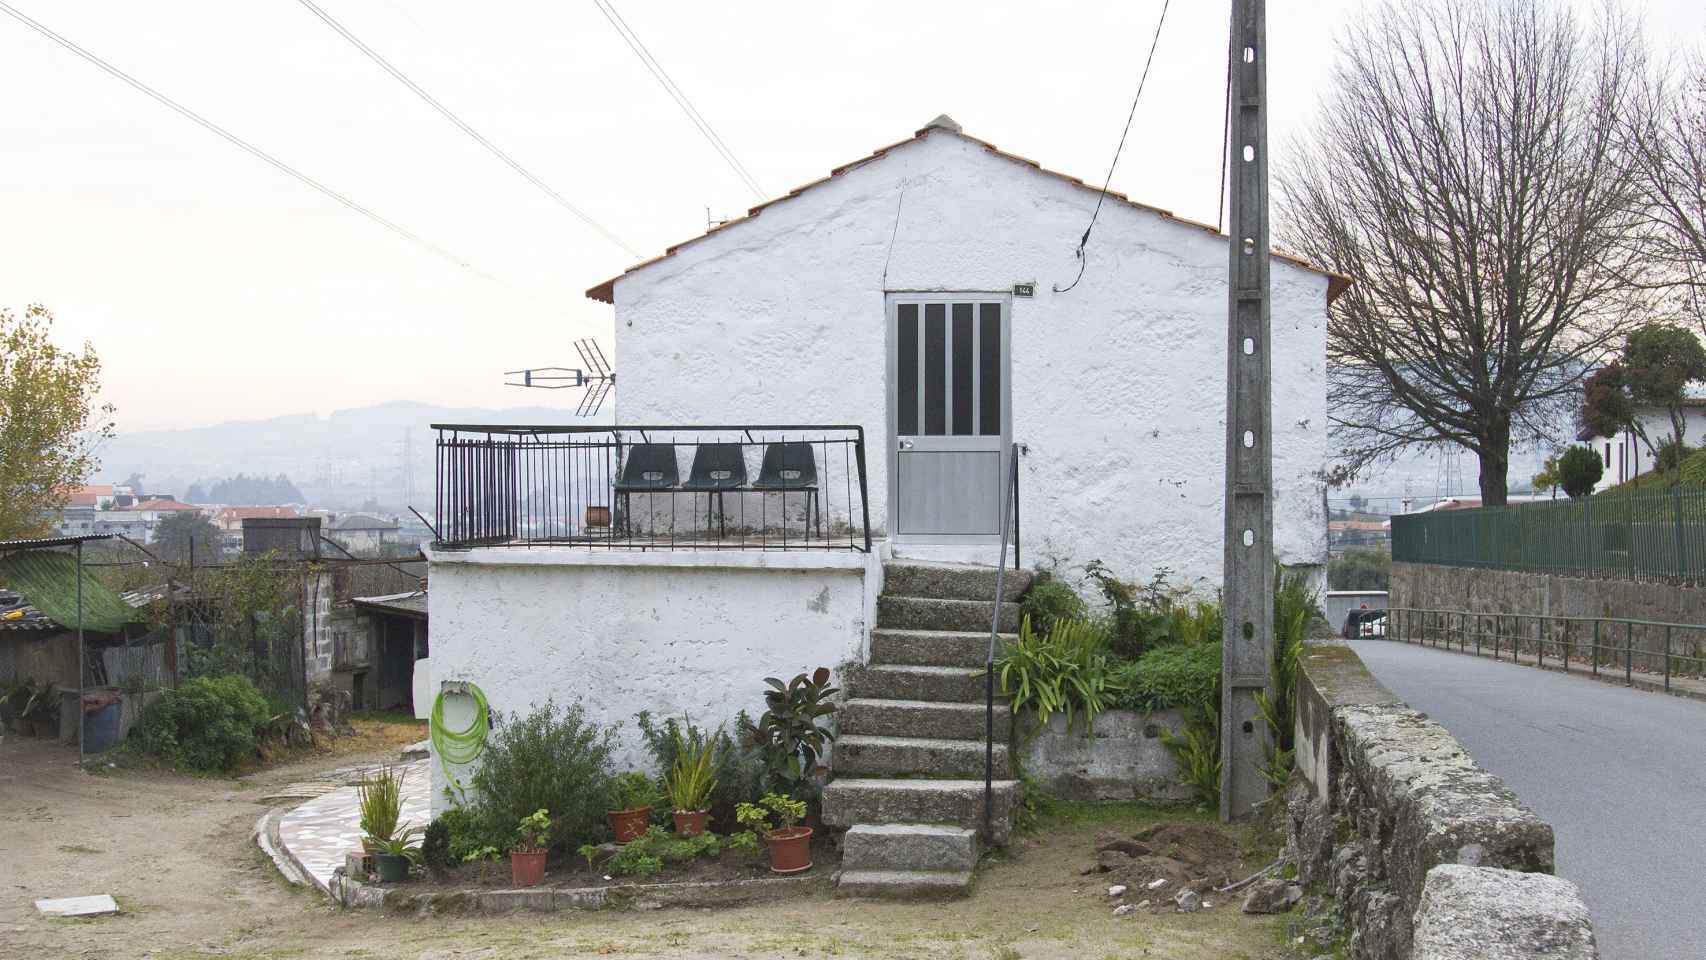 Casa típica de la aldea de Serzedelo, Guimarães.